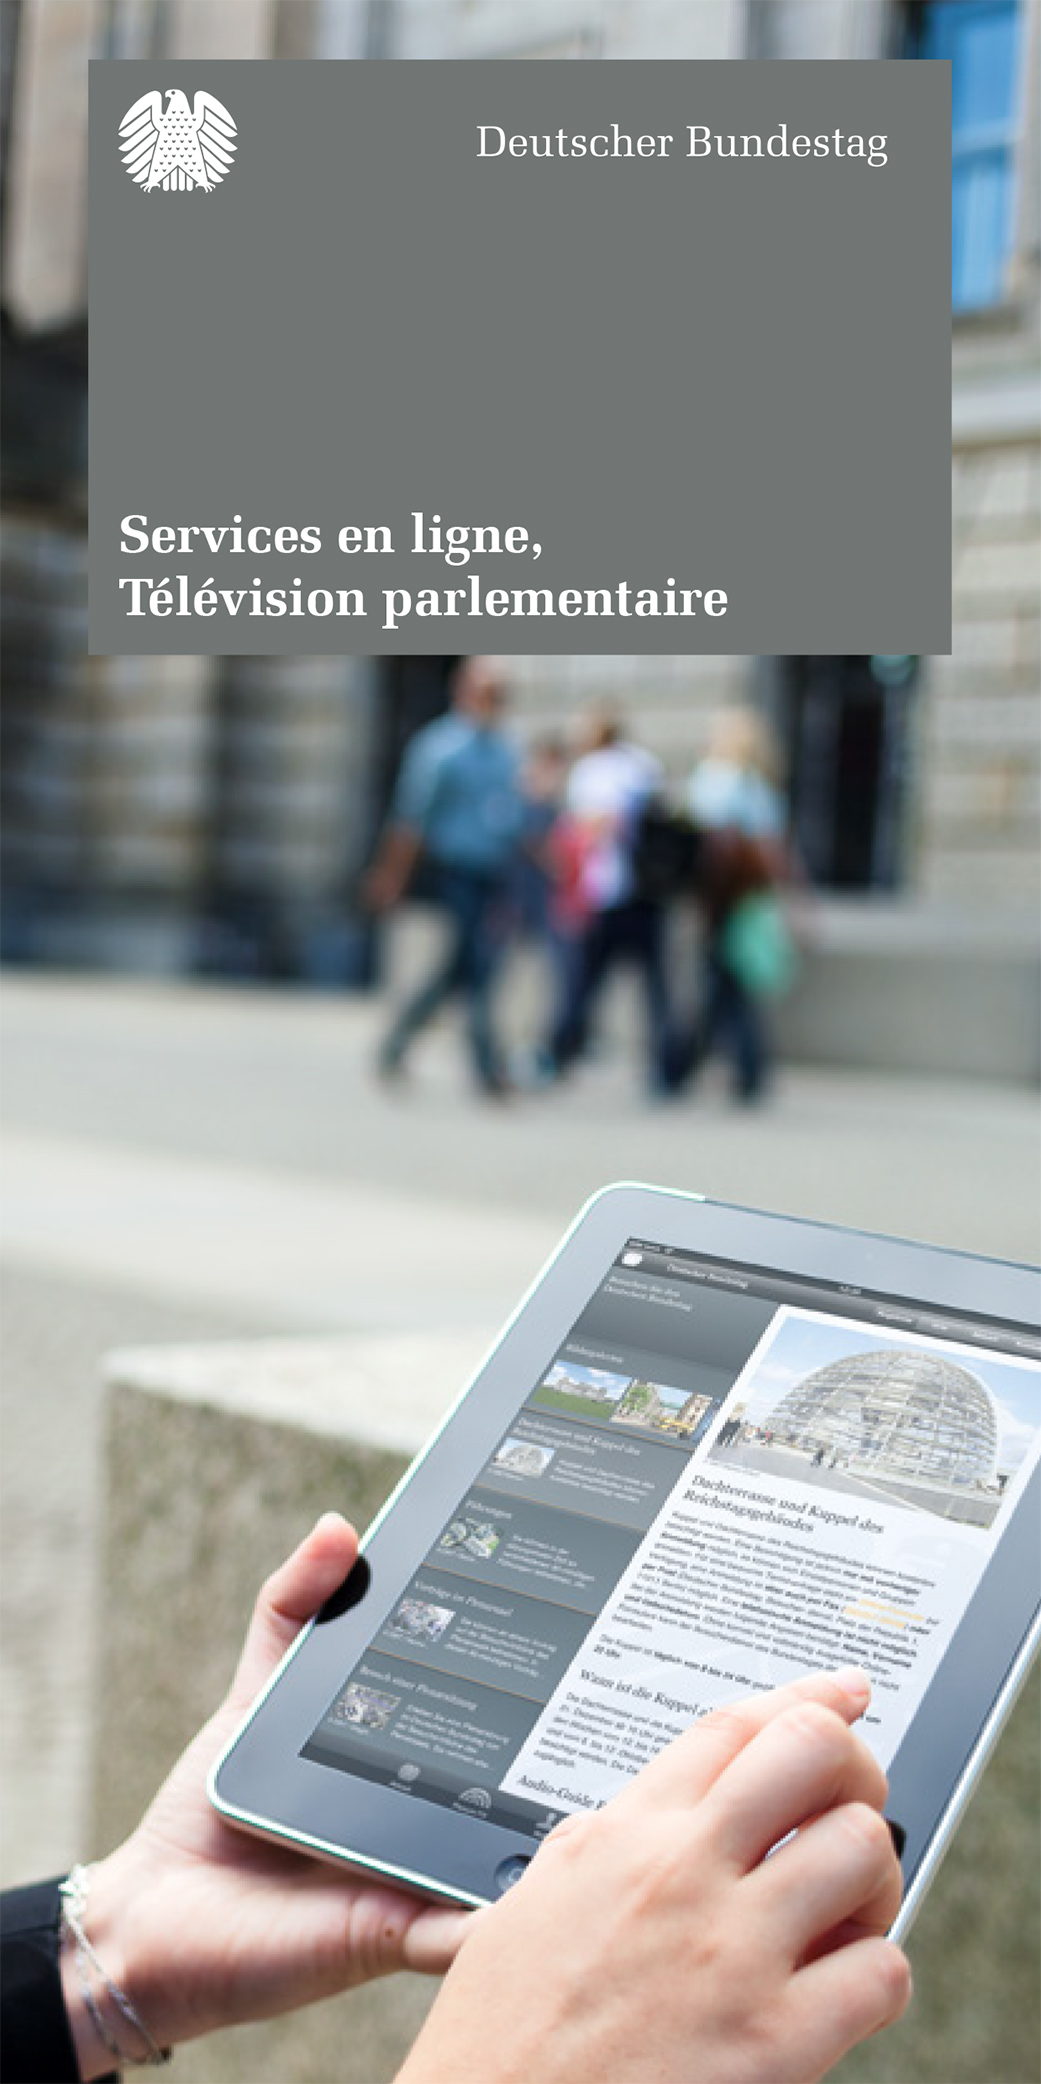 Services en ligne; Télévision parlamentaire